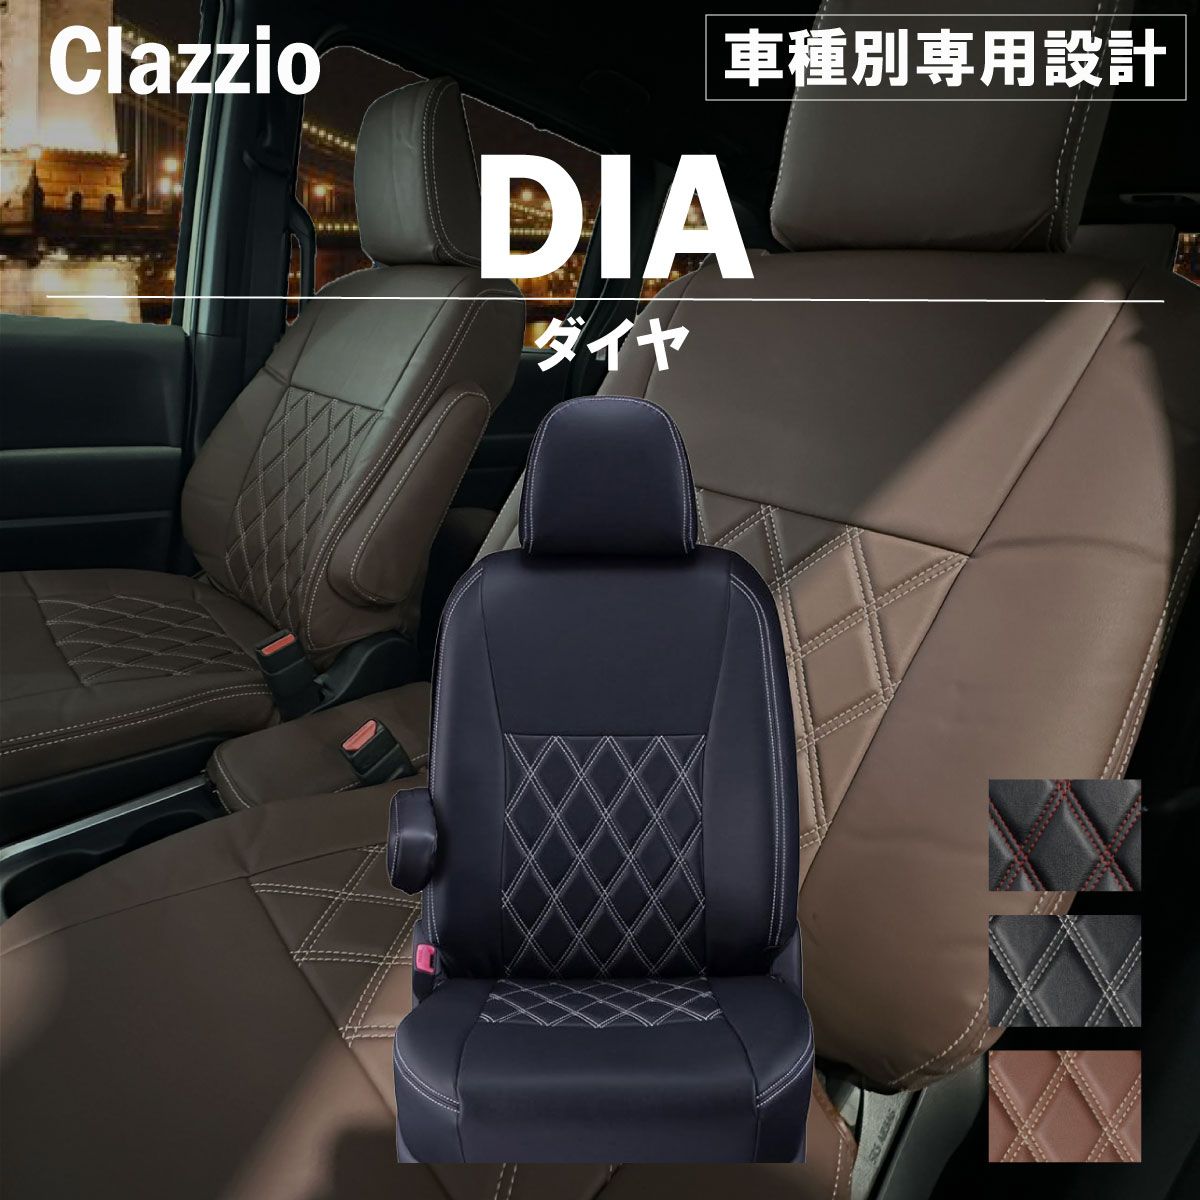 販売売VN5 レヴォーグ クラッツィオ Clazzio DIA キルトレザー調シートカバー スバル用